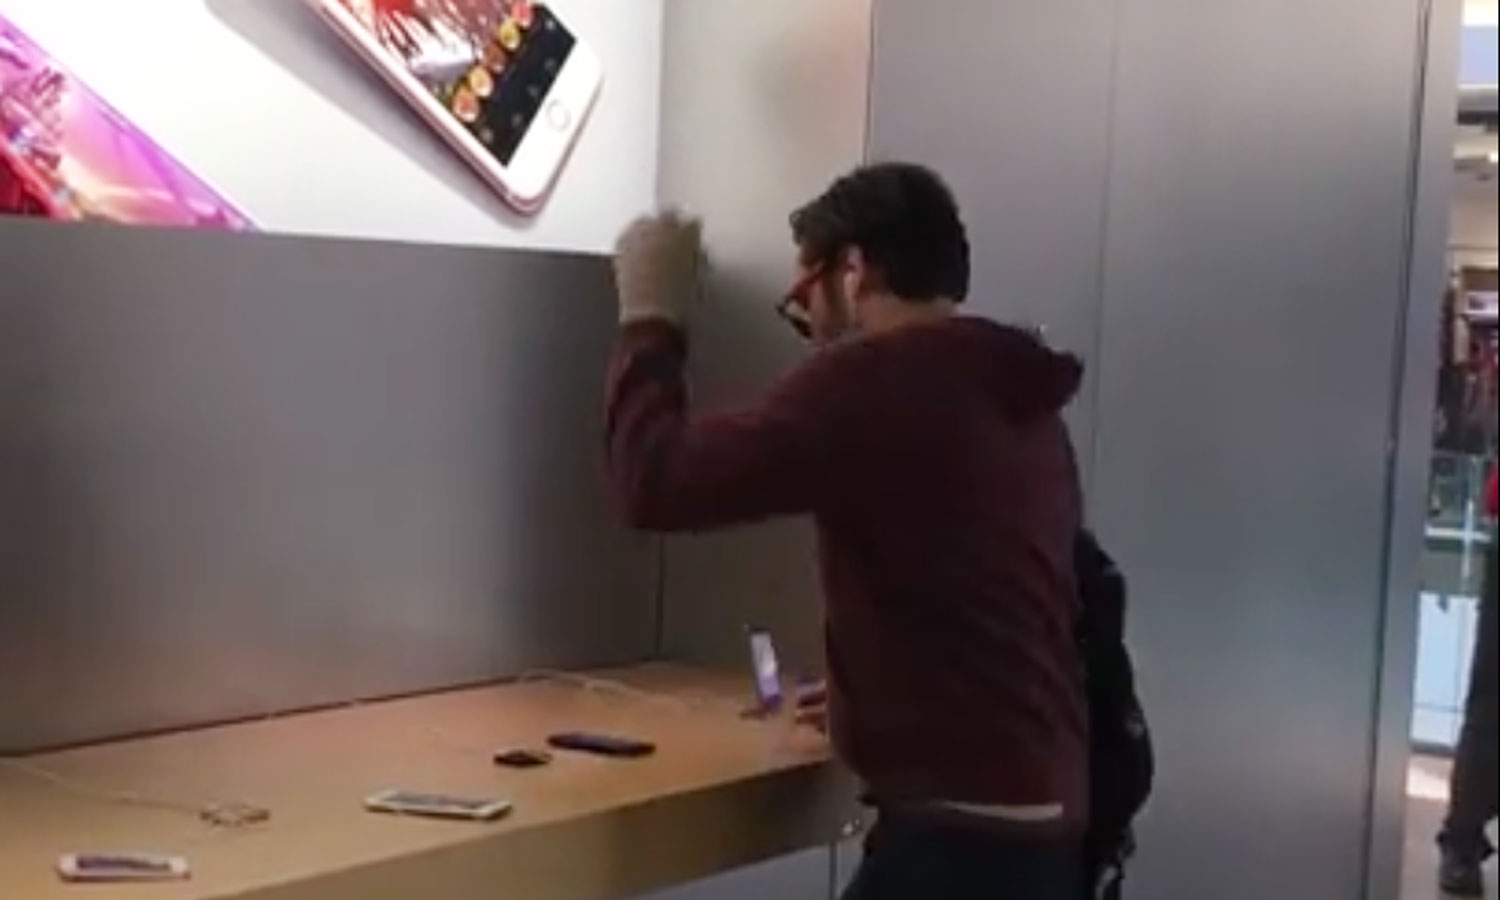  (Video) Hombre furioso destruye productos de tienda Apple en Francia